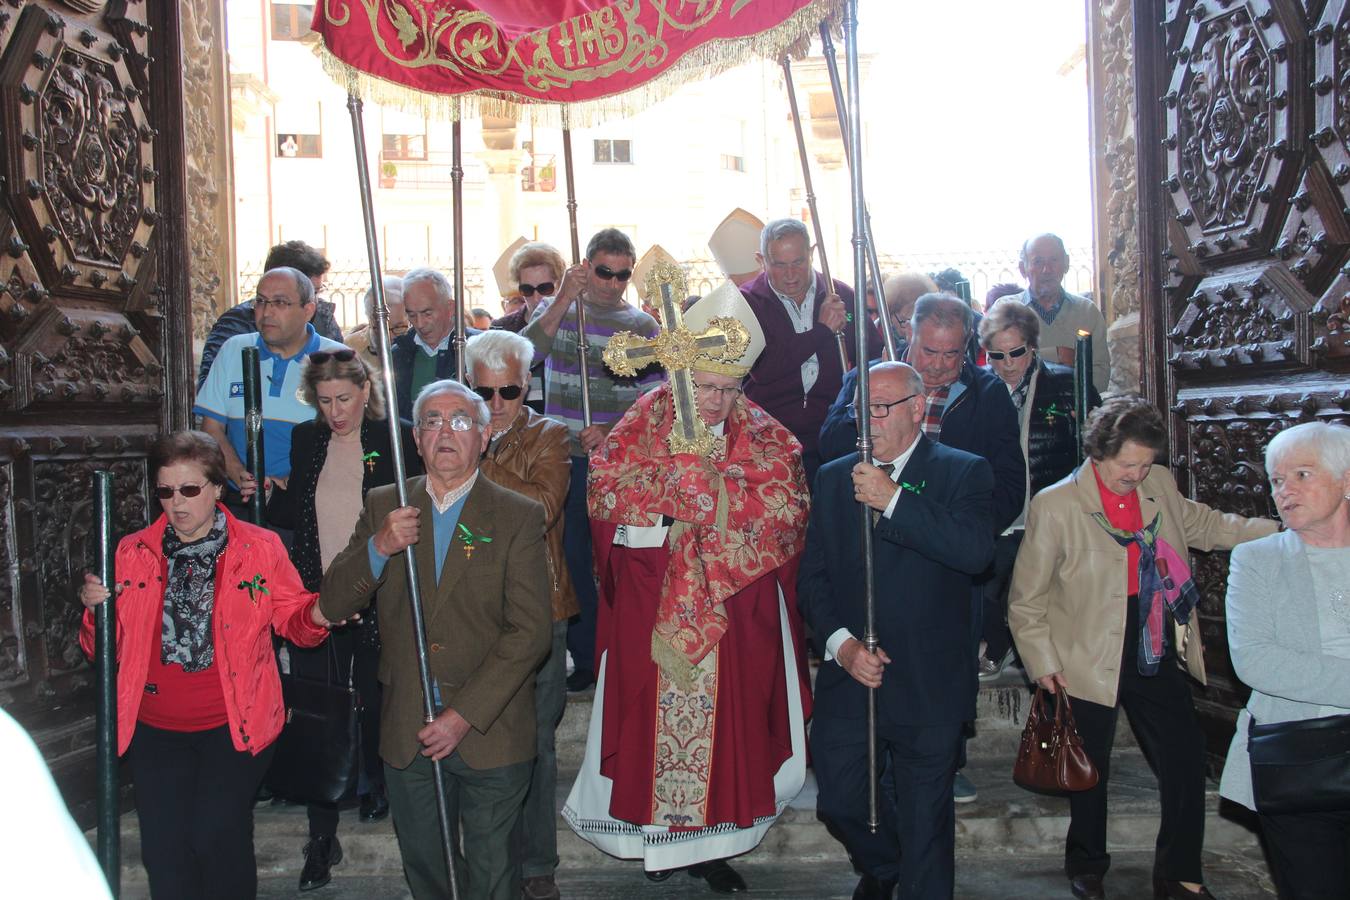 La reliquia ha viajado en coche desde Santo Toribio rumbo a Astorga. A su llegada a León, el obispo de Santander entregó el Lignum Crucis al obispo de León, en un acto celebrado en la catedral